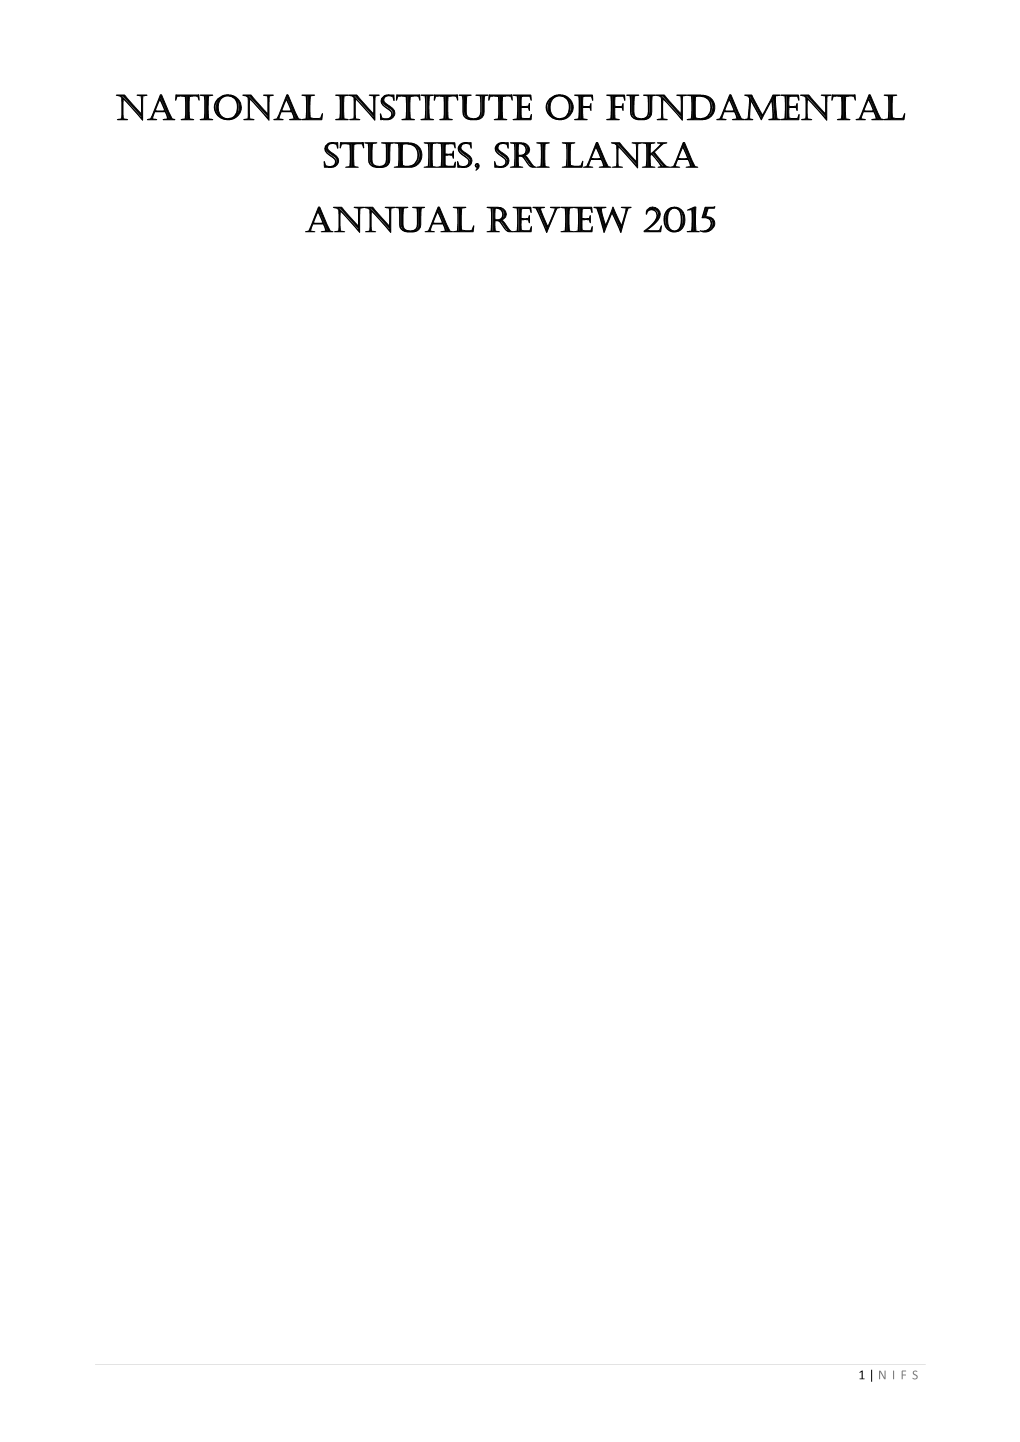 Annual Research Review 2015 EN.Pdf